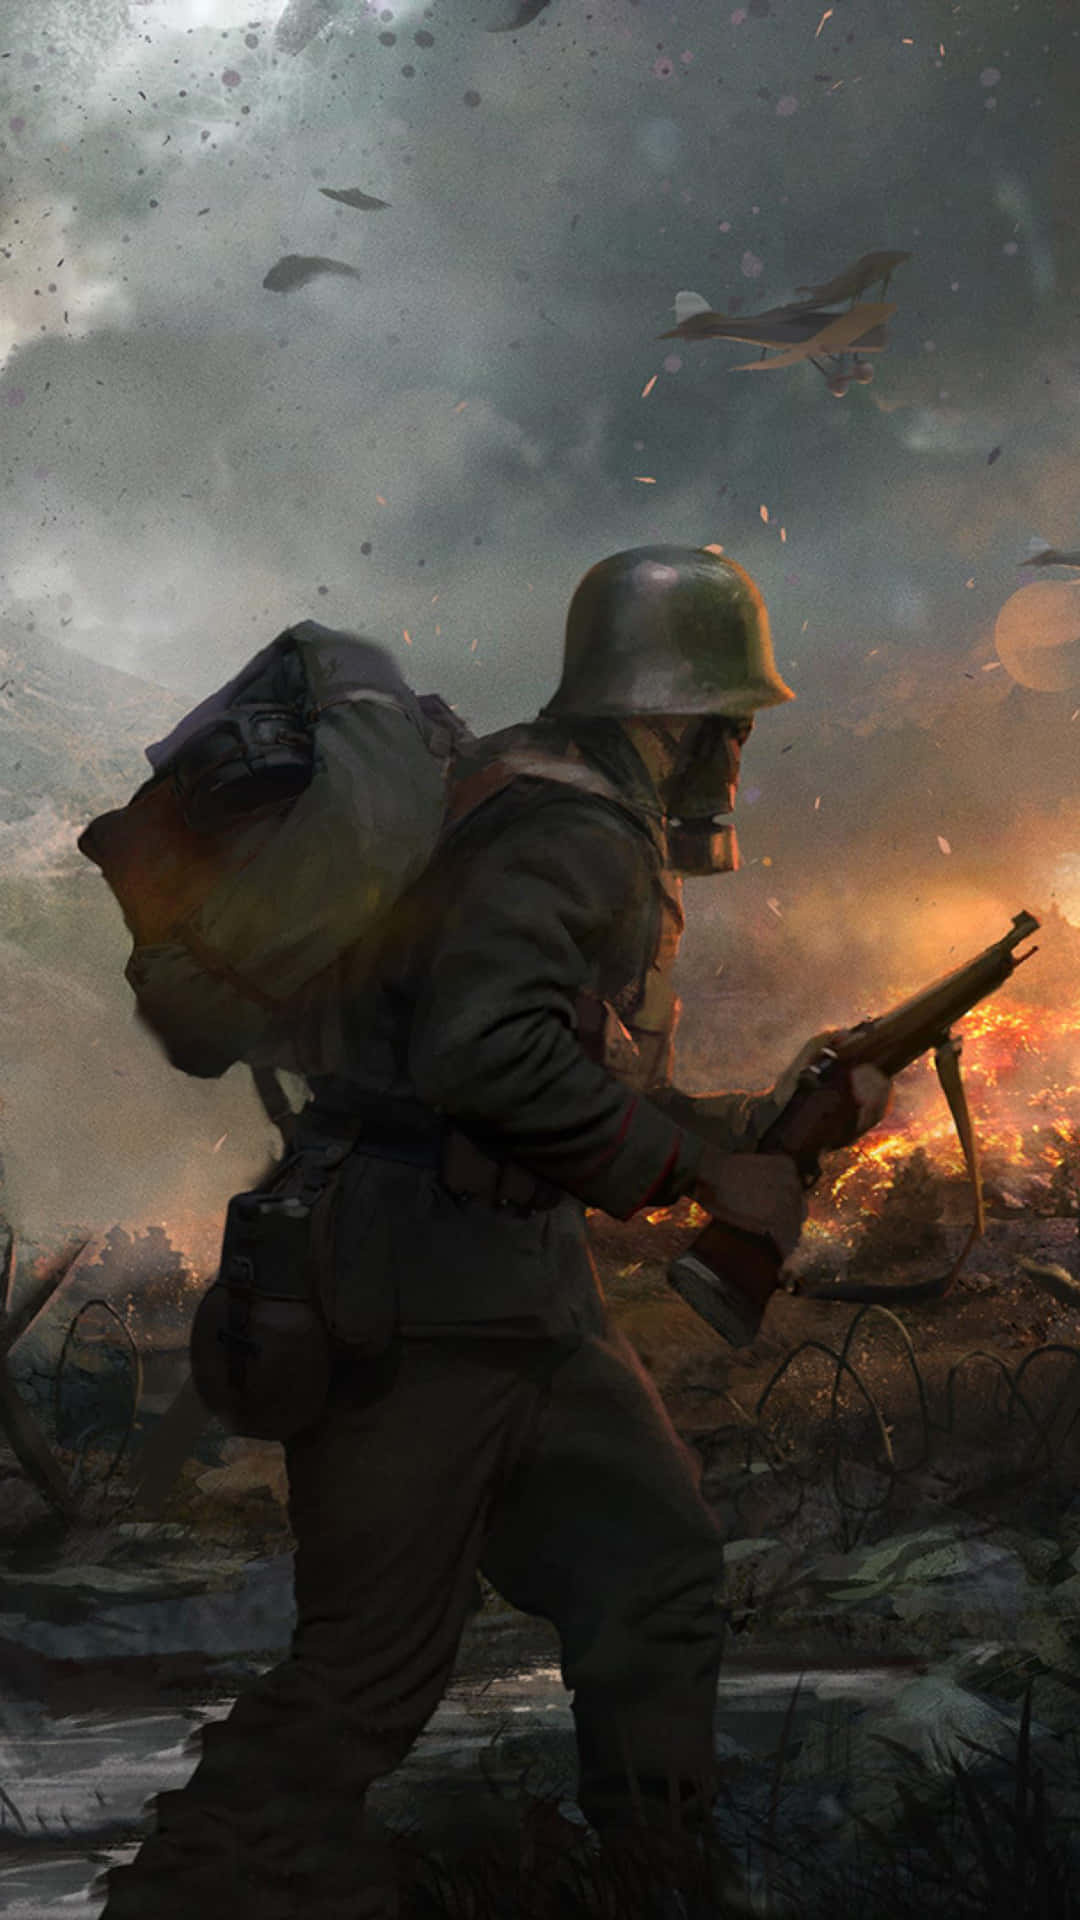 Preparatia Vivere Il Prossimo Livello Del Gaming Sul Battlefield Phone Sfondo